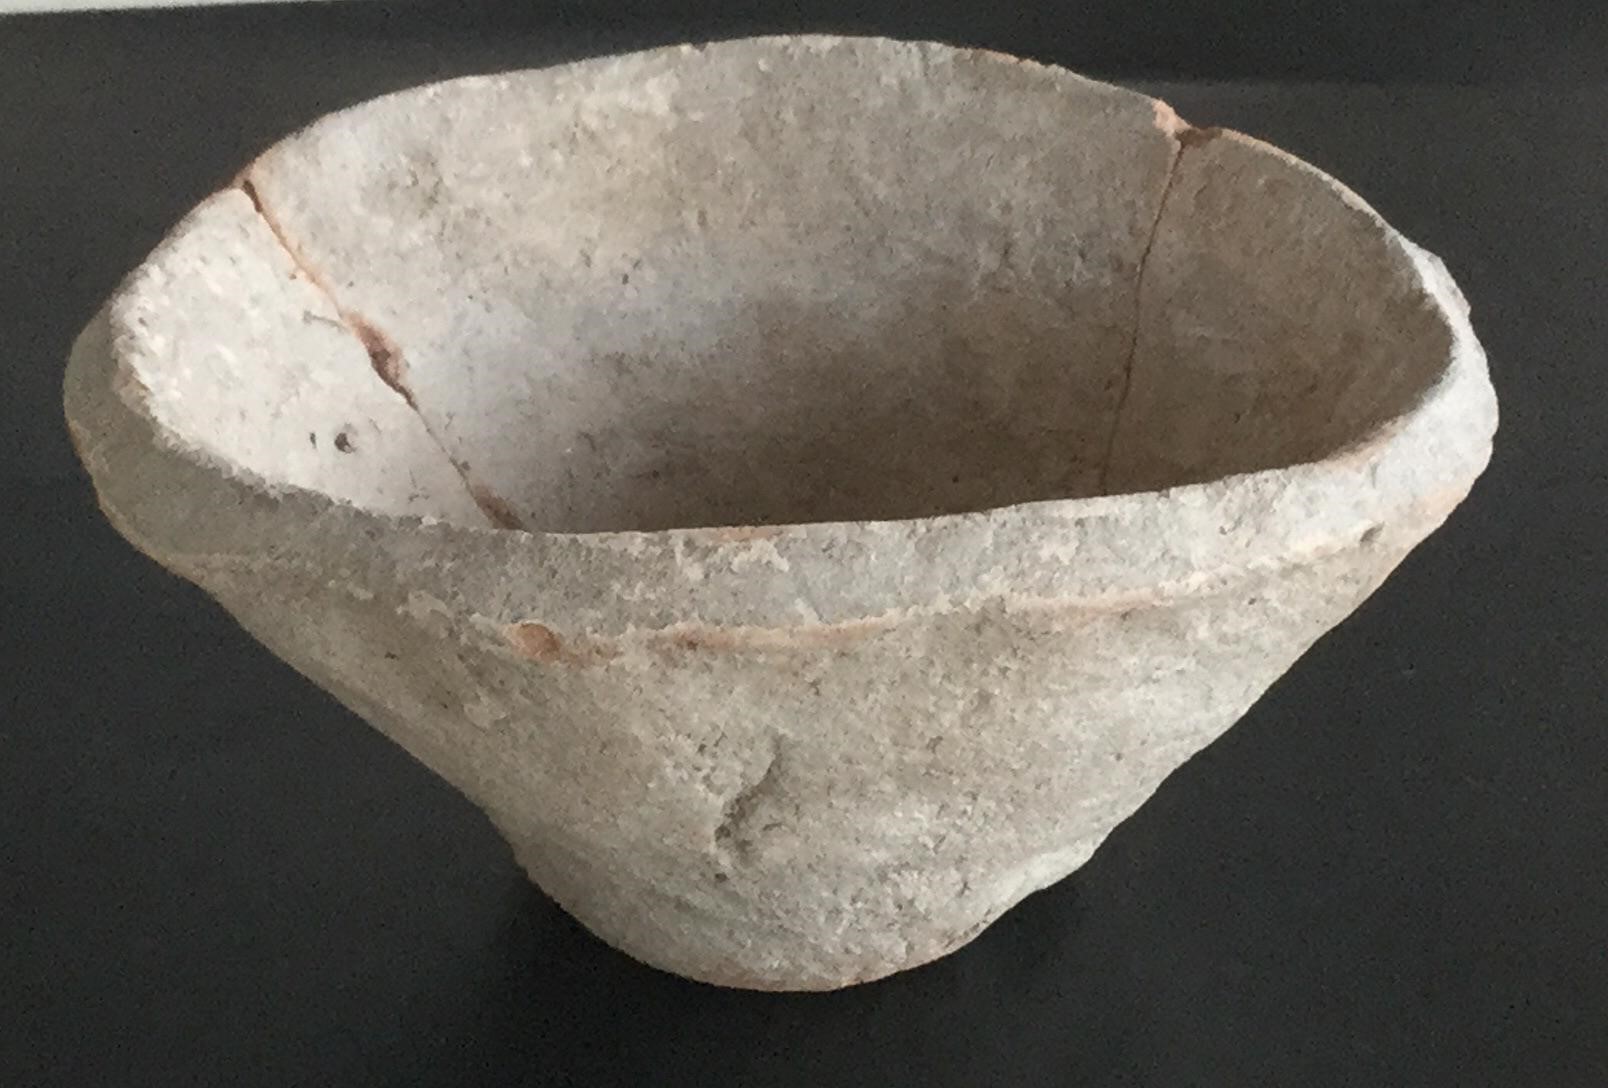 與中精心制作的碗和花瓶相比，烏魯克最常見 的陶瓷制品是粗糙的「斜邊碗」。但其並不像 它看起來的那樣是退步了。烏魯克繁榮昌盛， 它的陶工正忙於創造歷史上第一個批量生產的 物品。//圖片來源：Schauschgamuwa